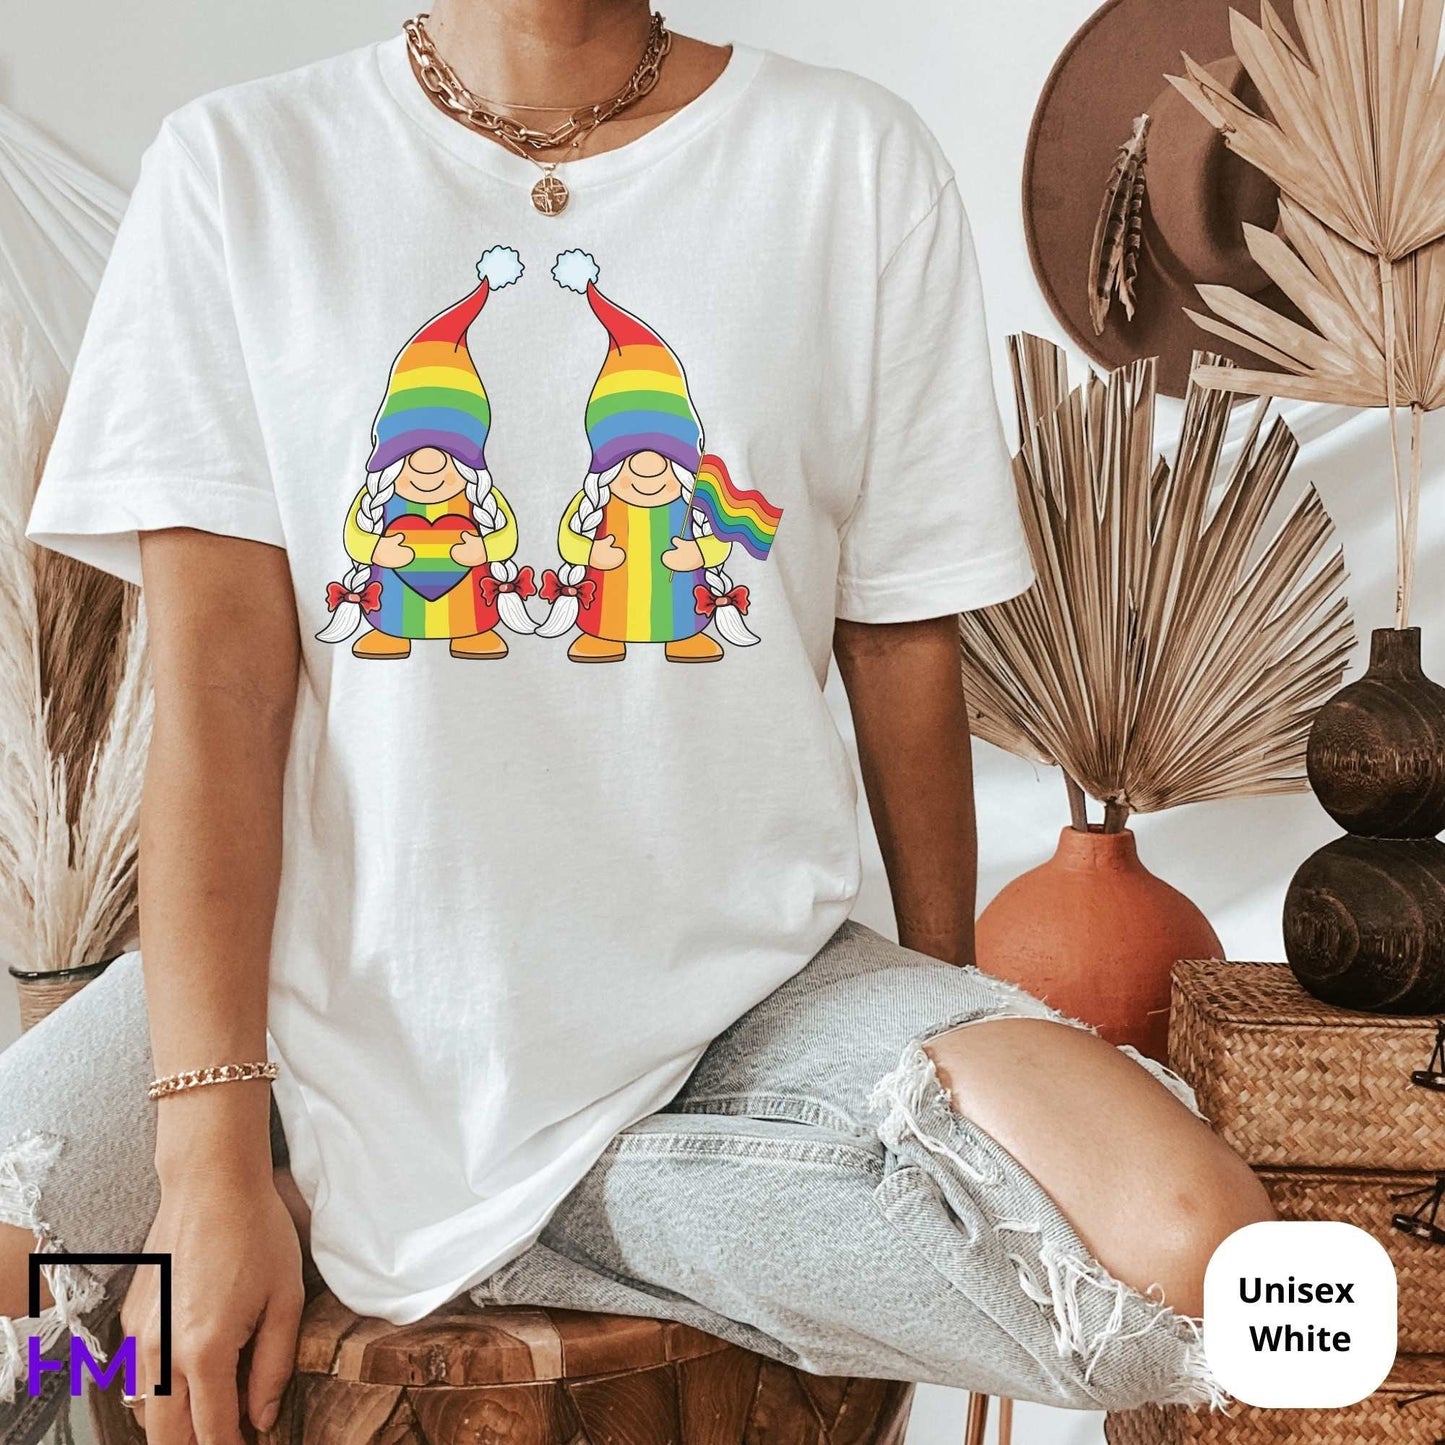 Pride Shirt, Gnomes Rainbow, Human Rights Love is Love Shirt, Retro Hippie Shirt, Equality T-Shirt, LGBTQ Support Shirts, LGBTQ Pride Shirts